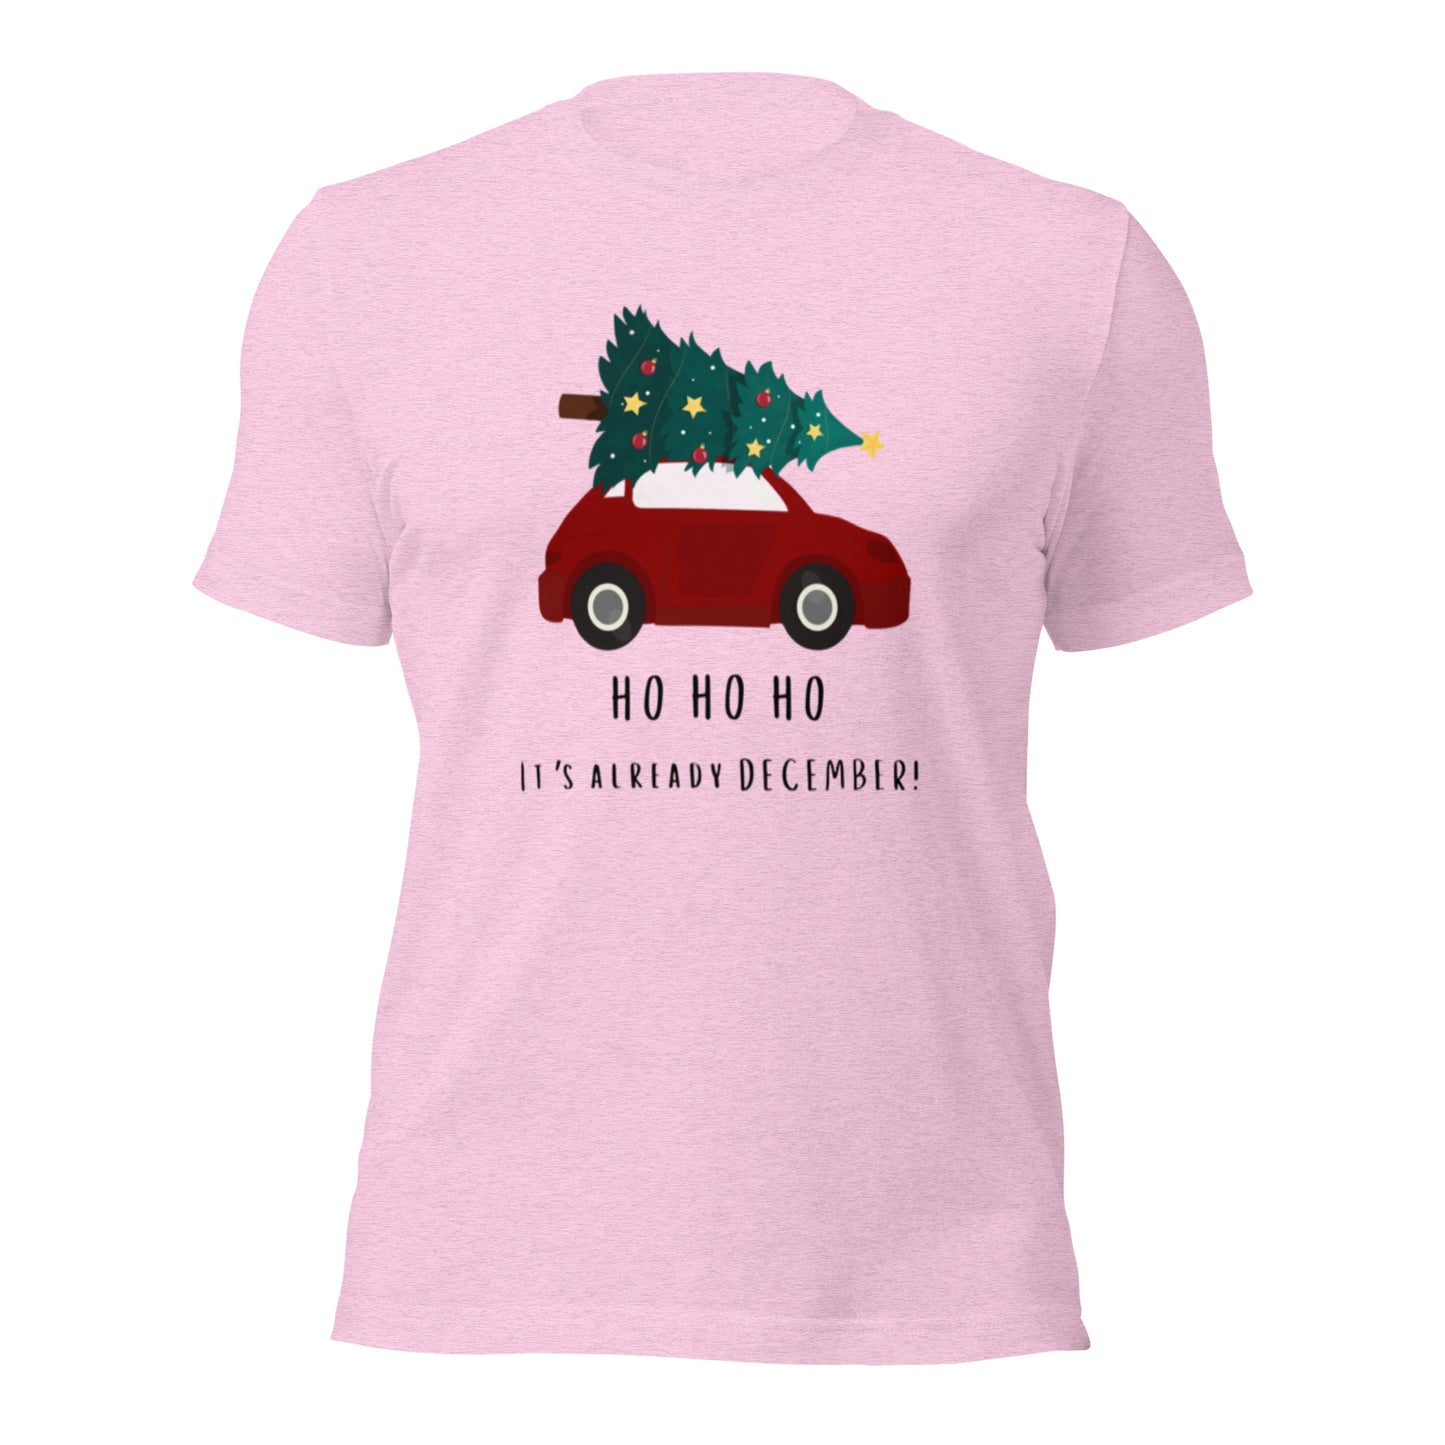 Ho Ho Ho Unisex t-shirt